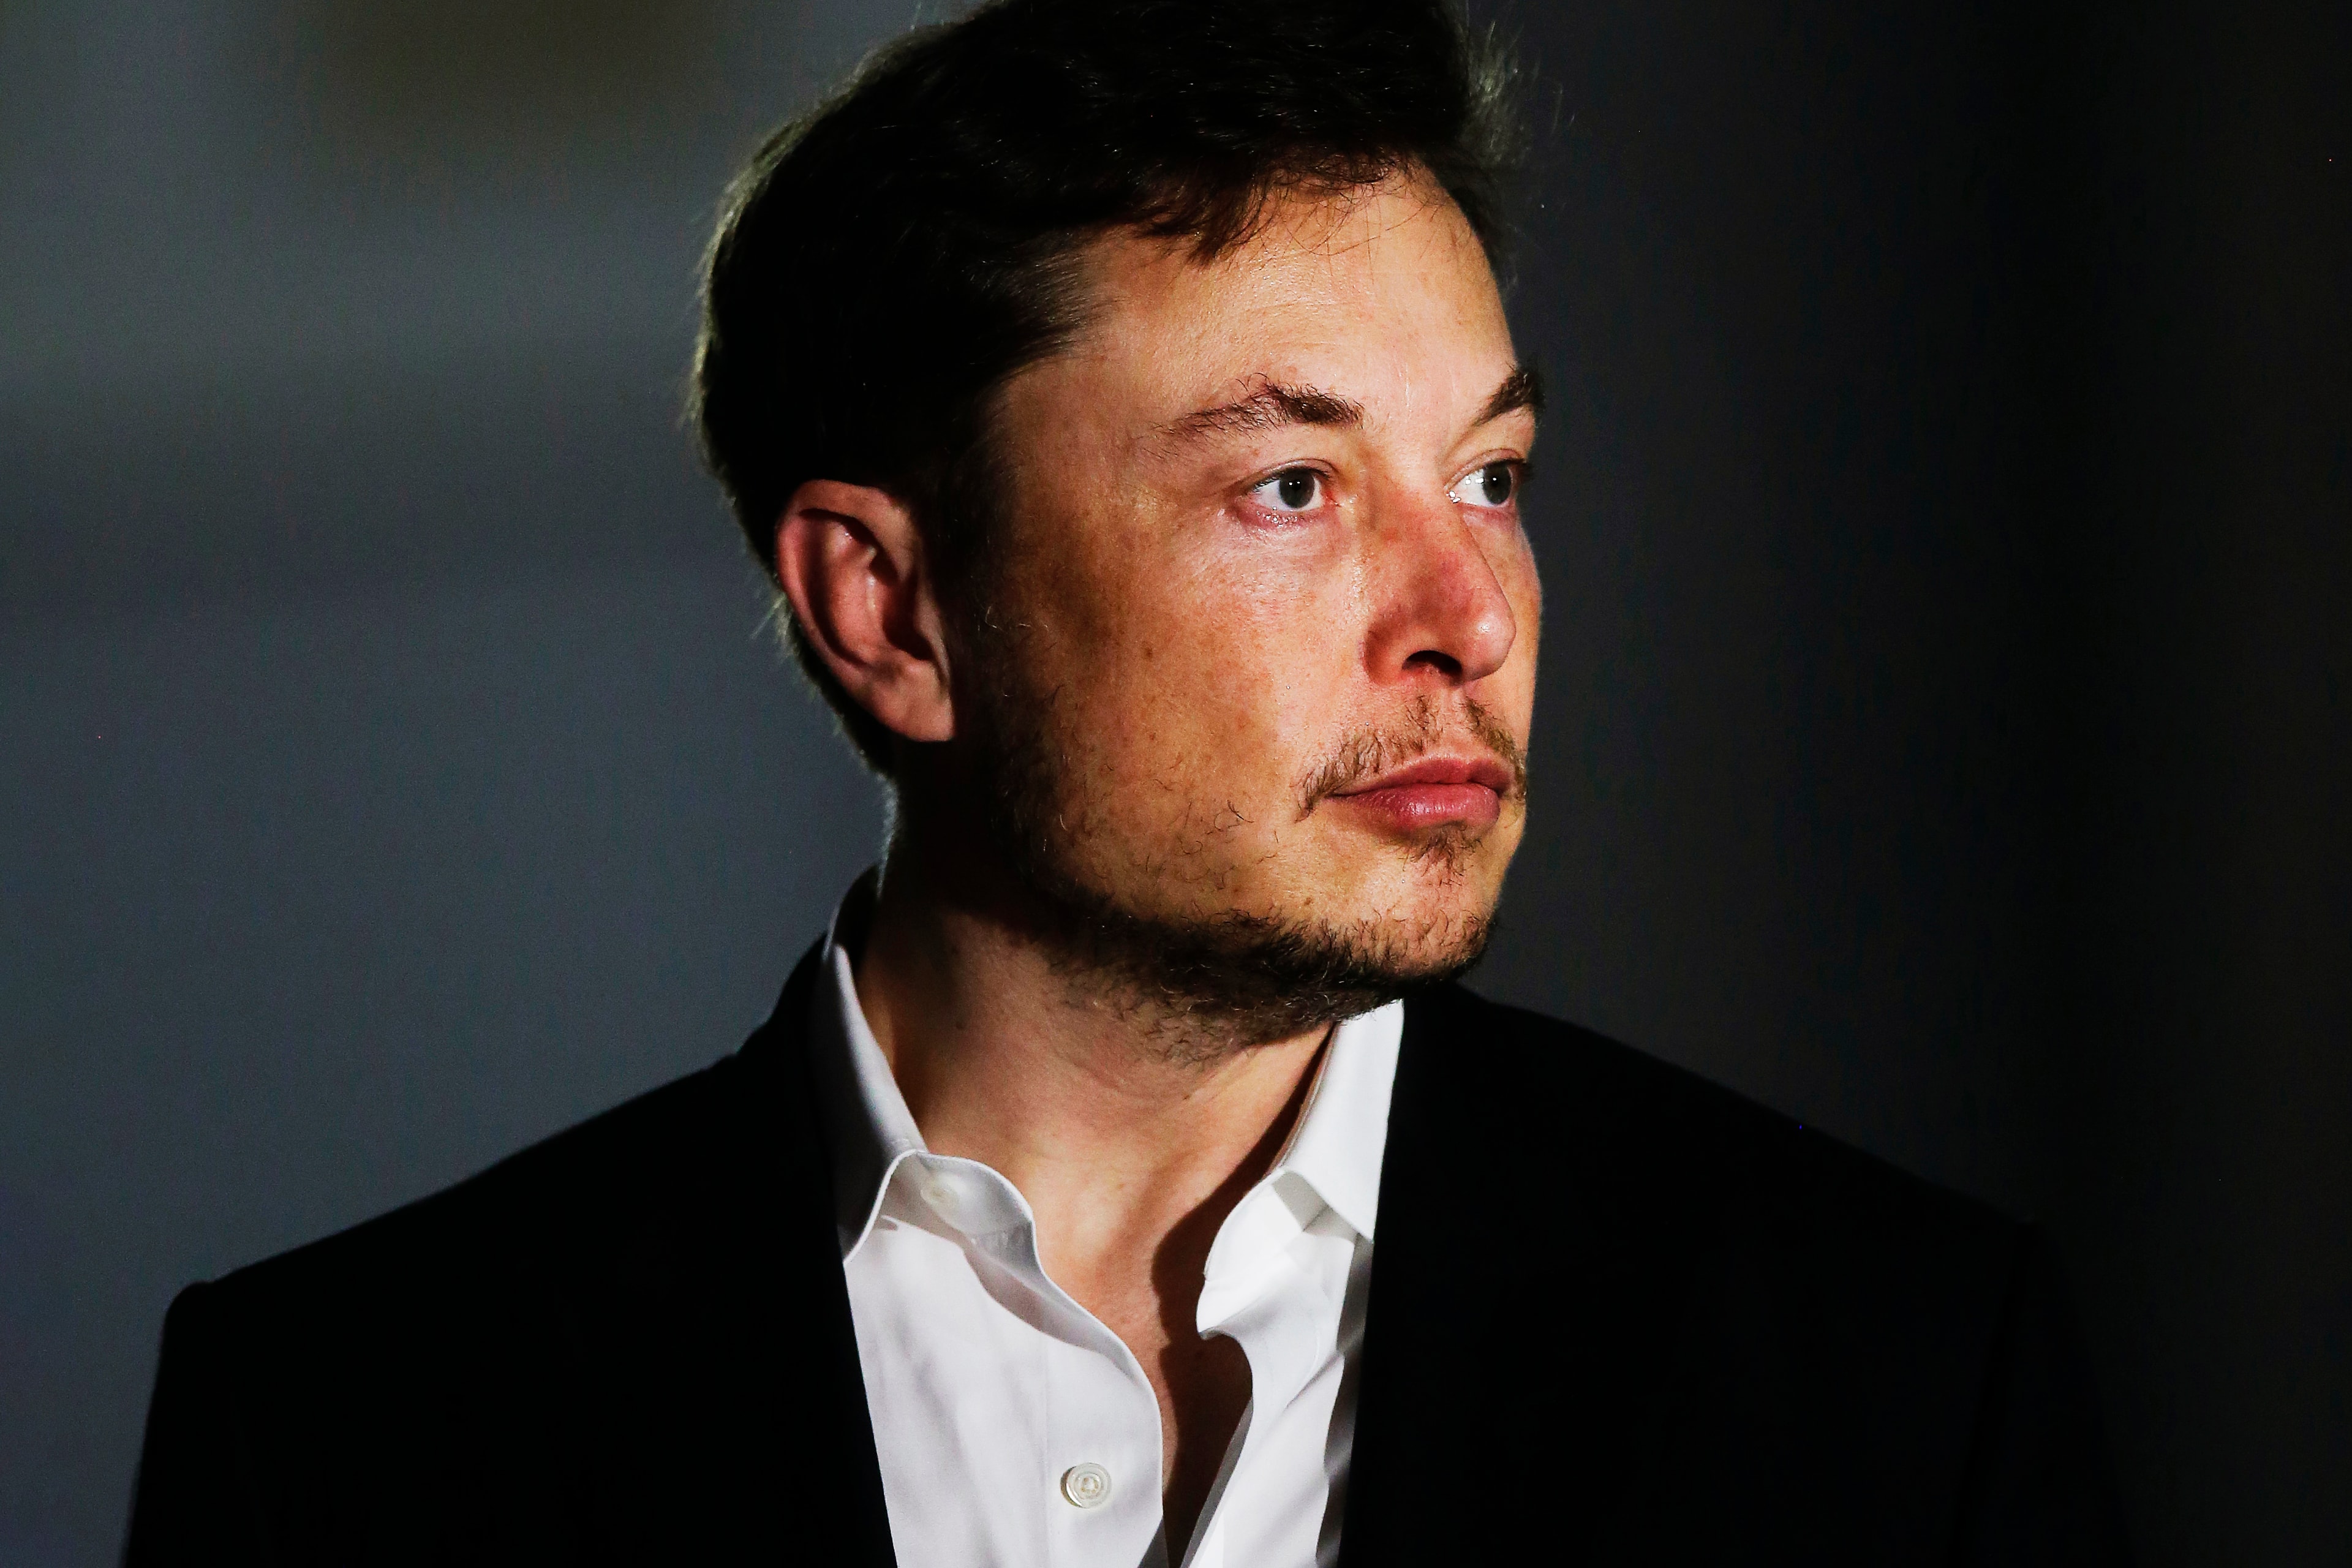 Elon Musk Tesla CEO SEC Violation Broken Hold In Contempt 500k Car Production Tweet Stock Exchange Twitter